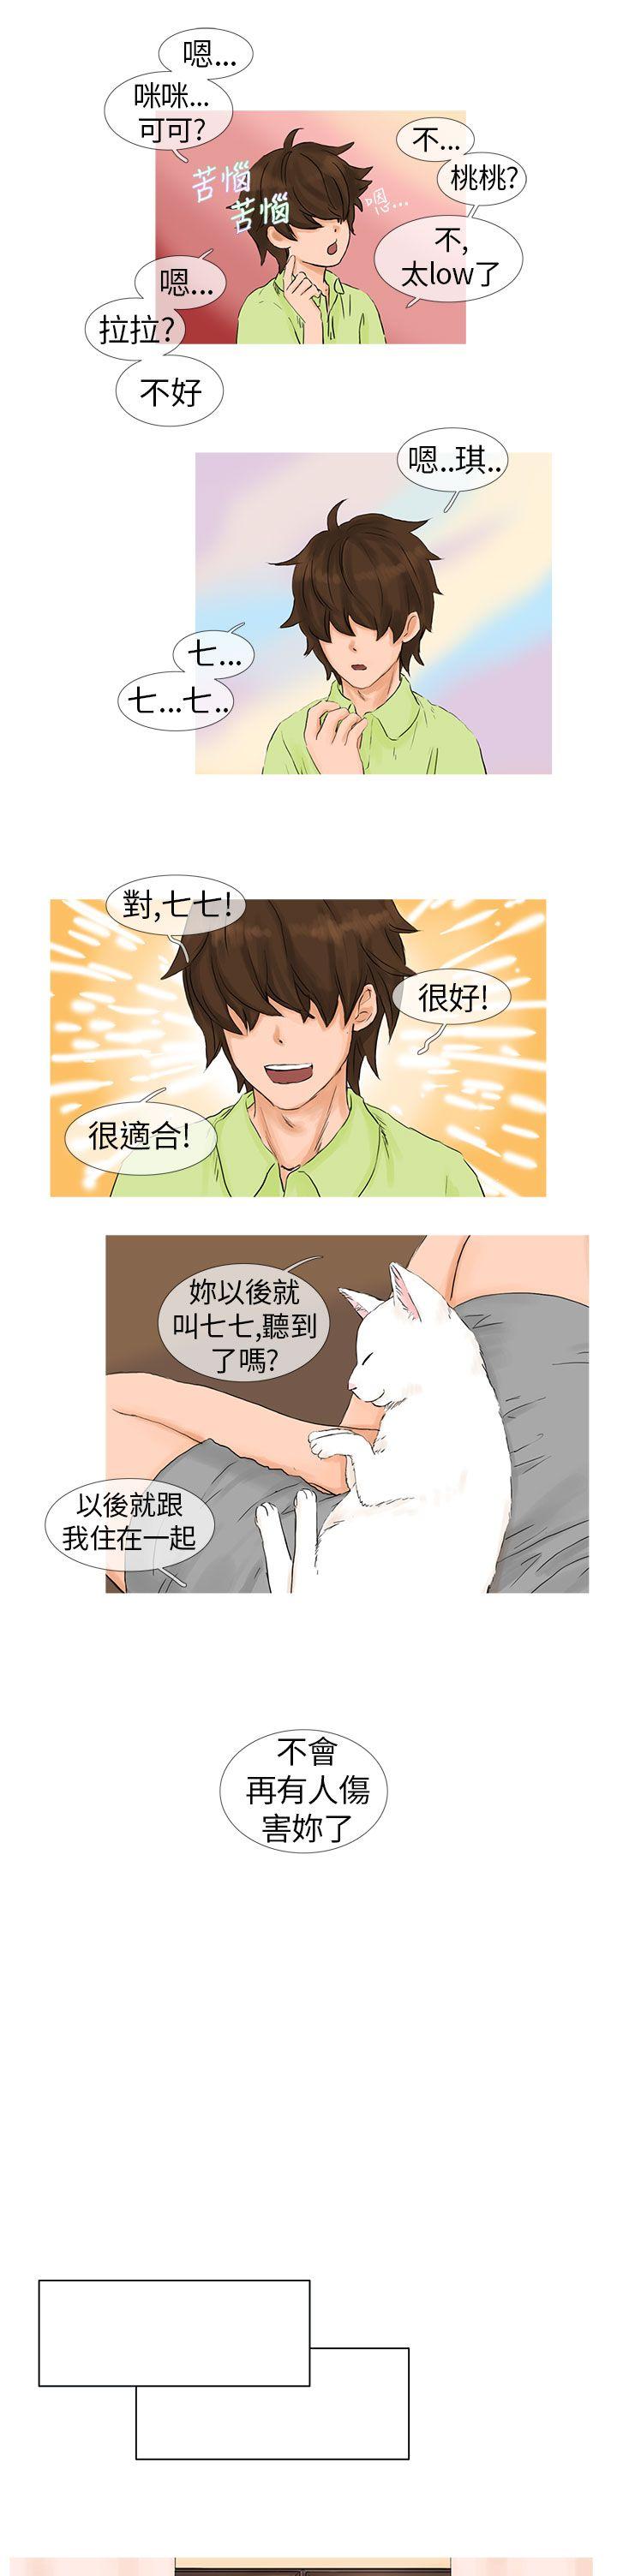 《小野猫驯服手册》漫画 第1话